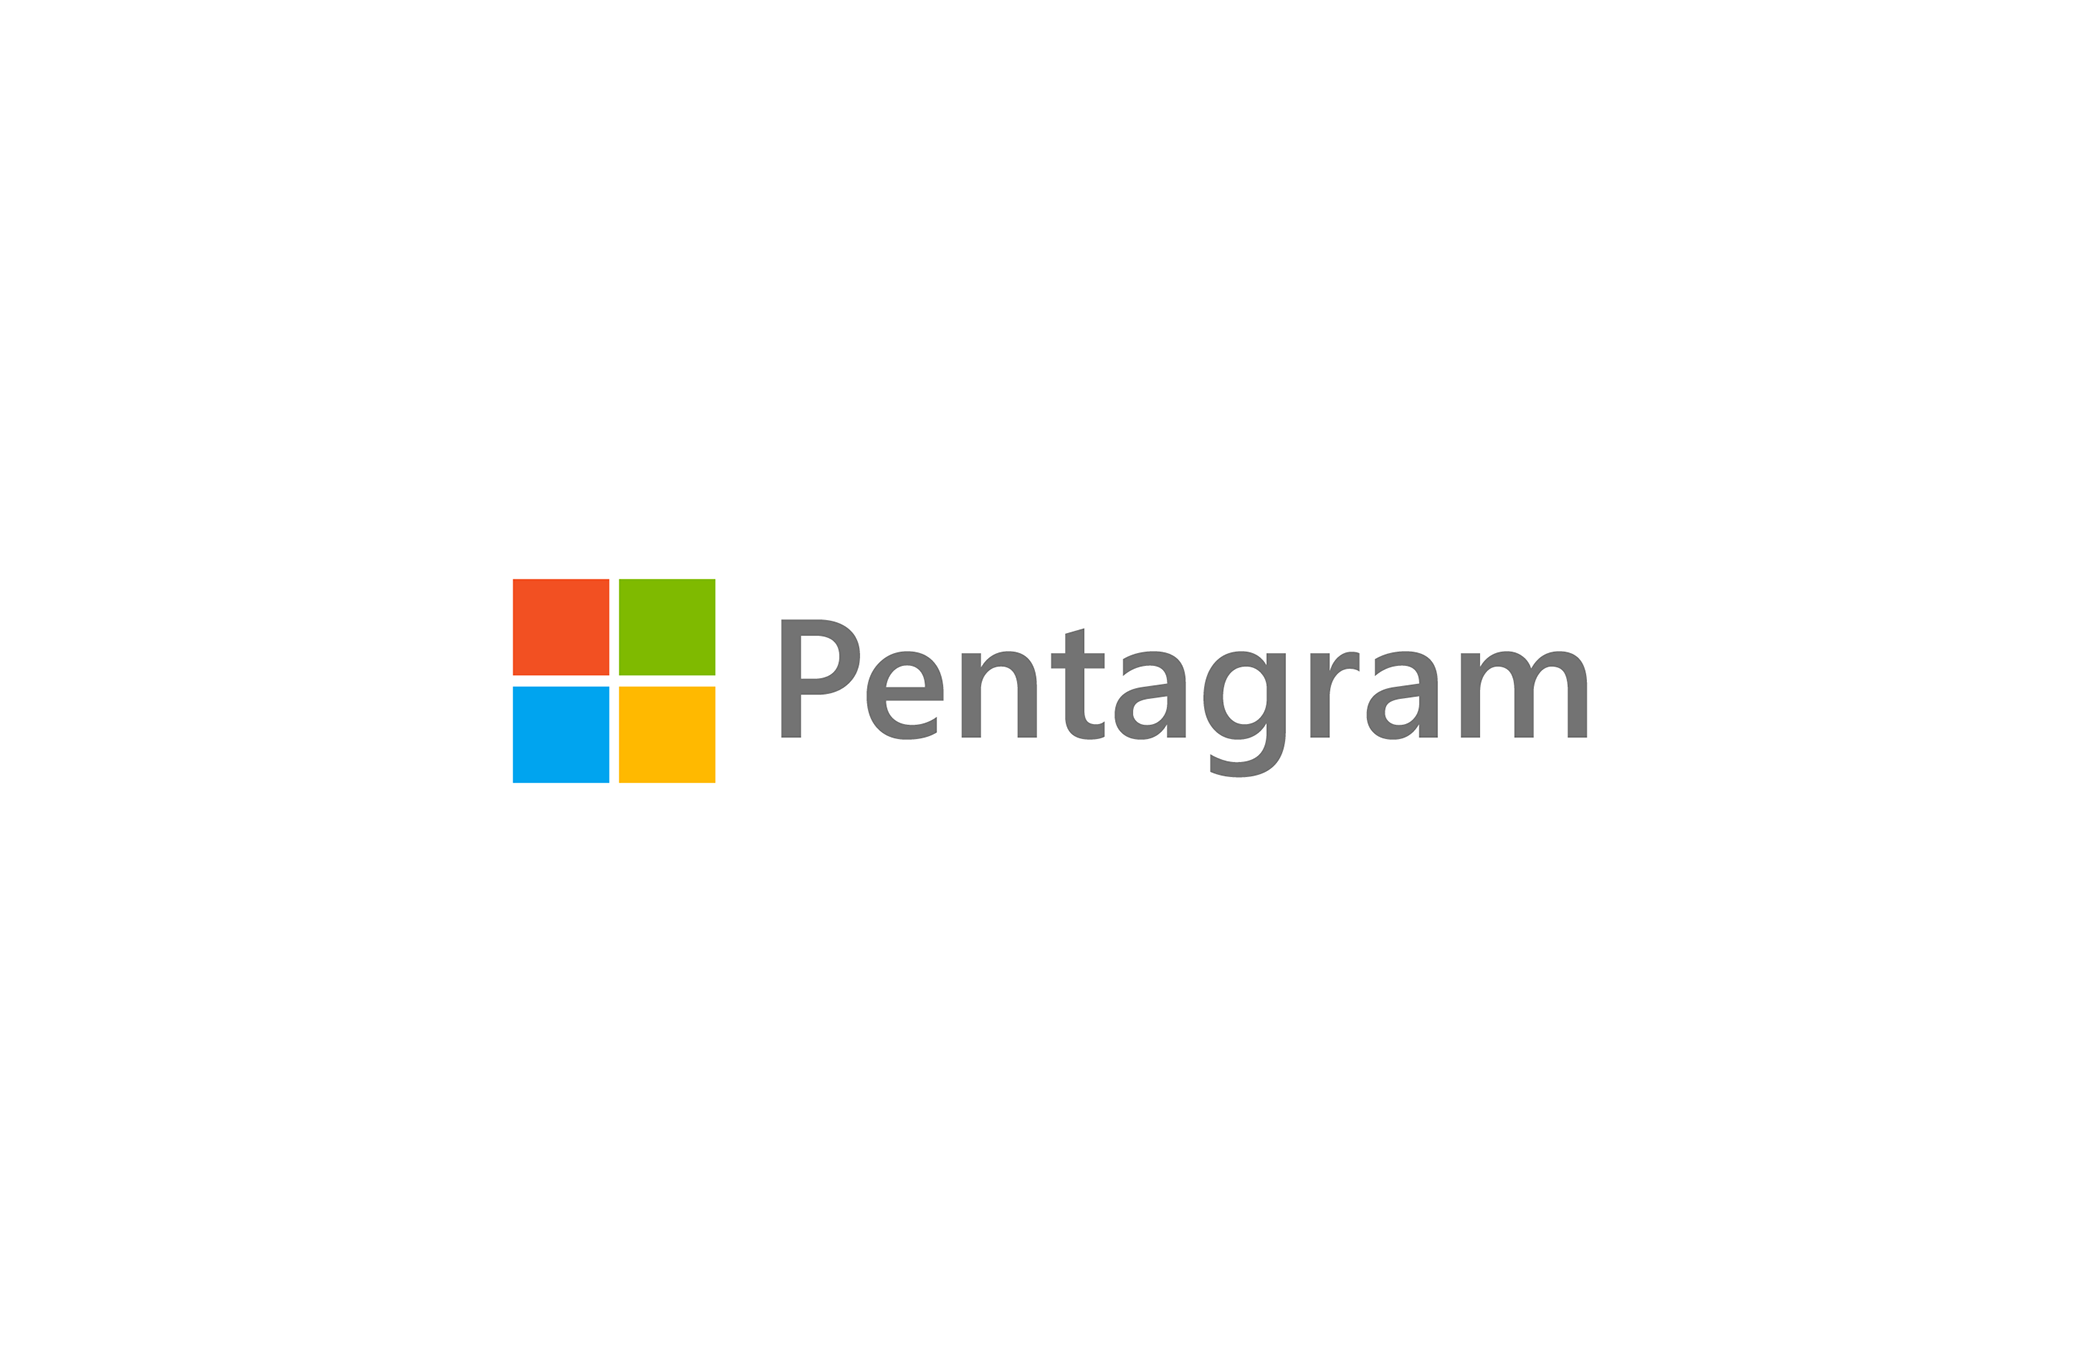 Pentagram - Agency behind the Microsoft logo